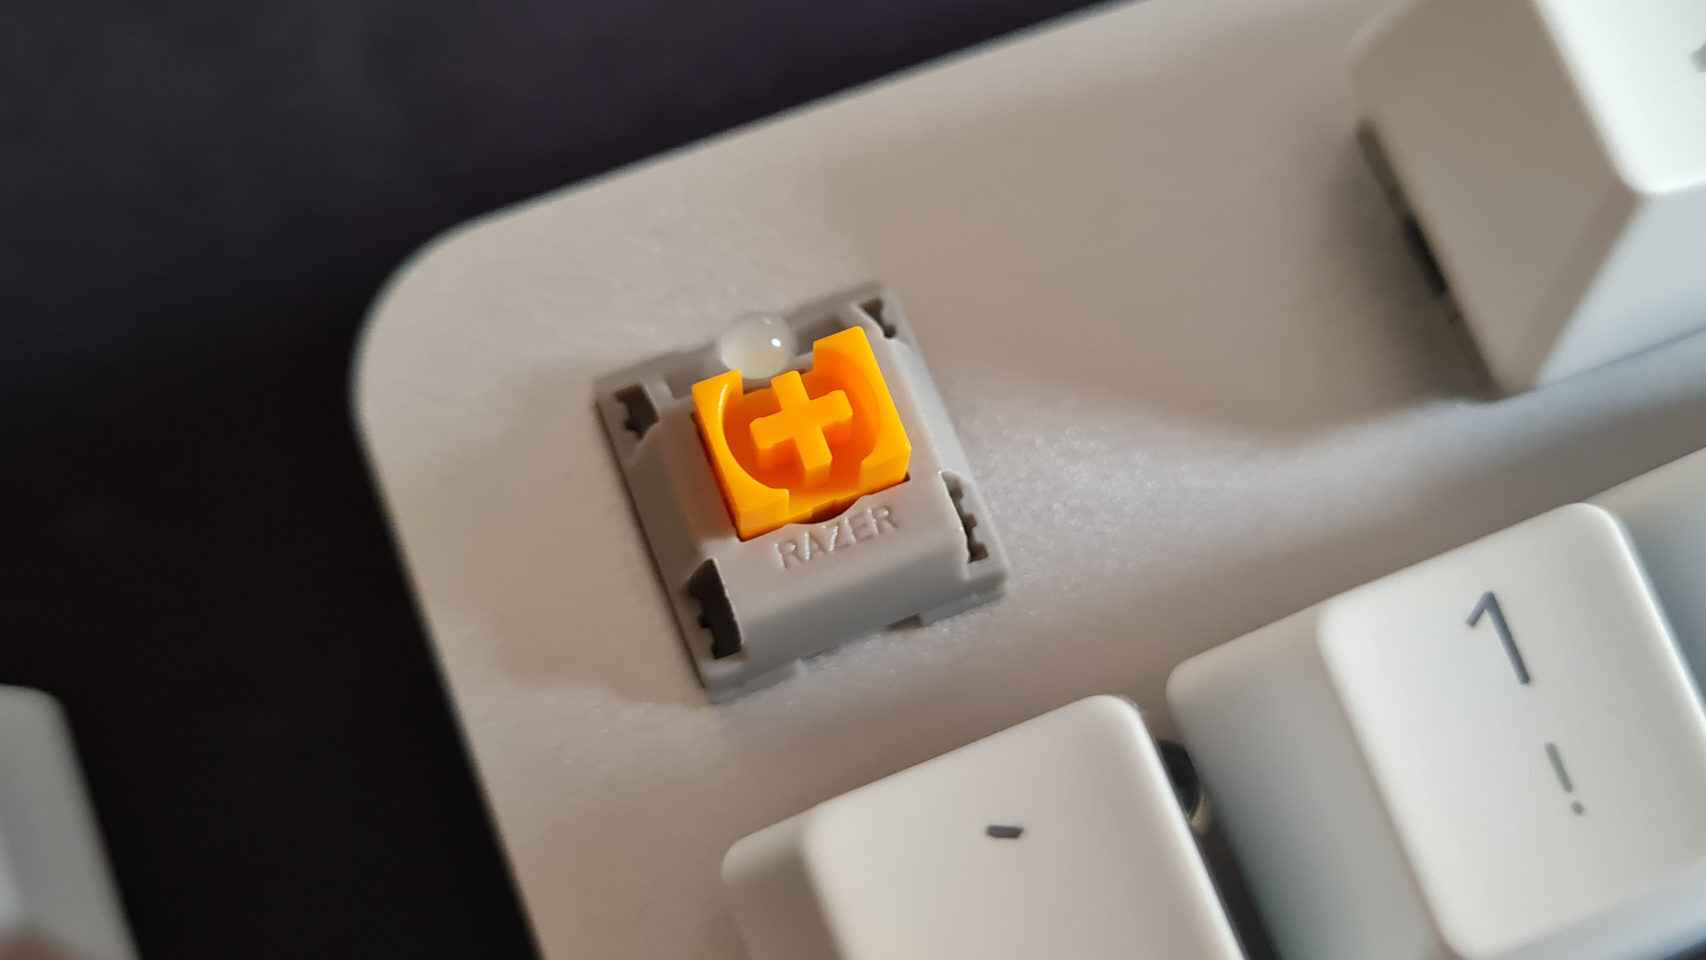 La parte más importante del Razer Pro Type son sus switches naranjas